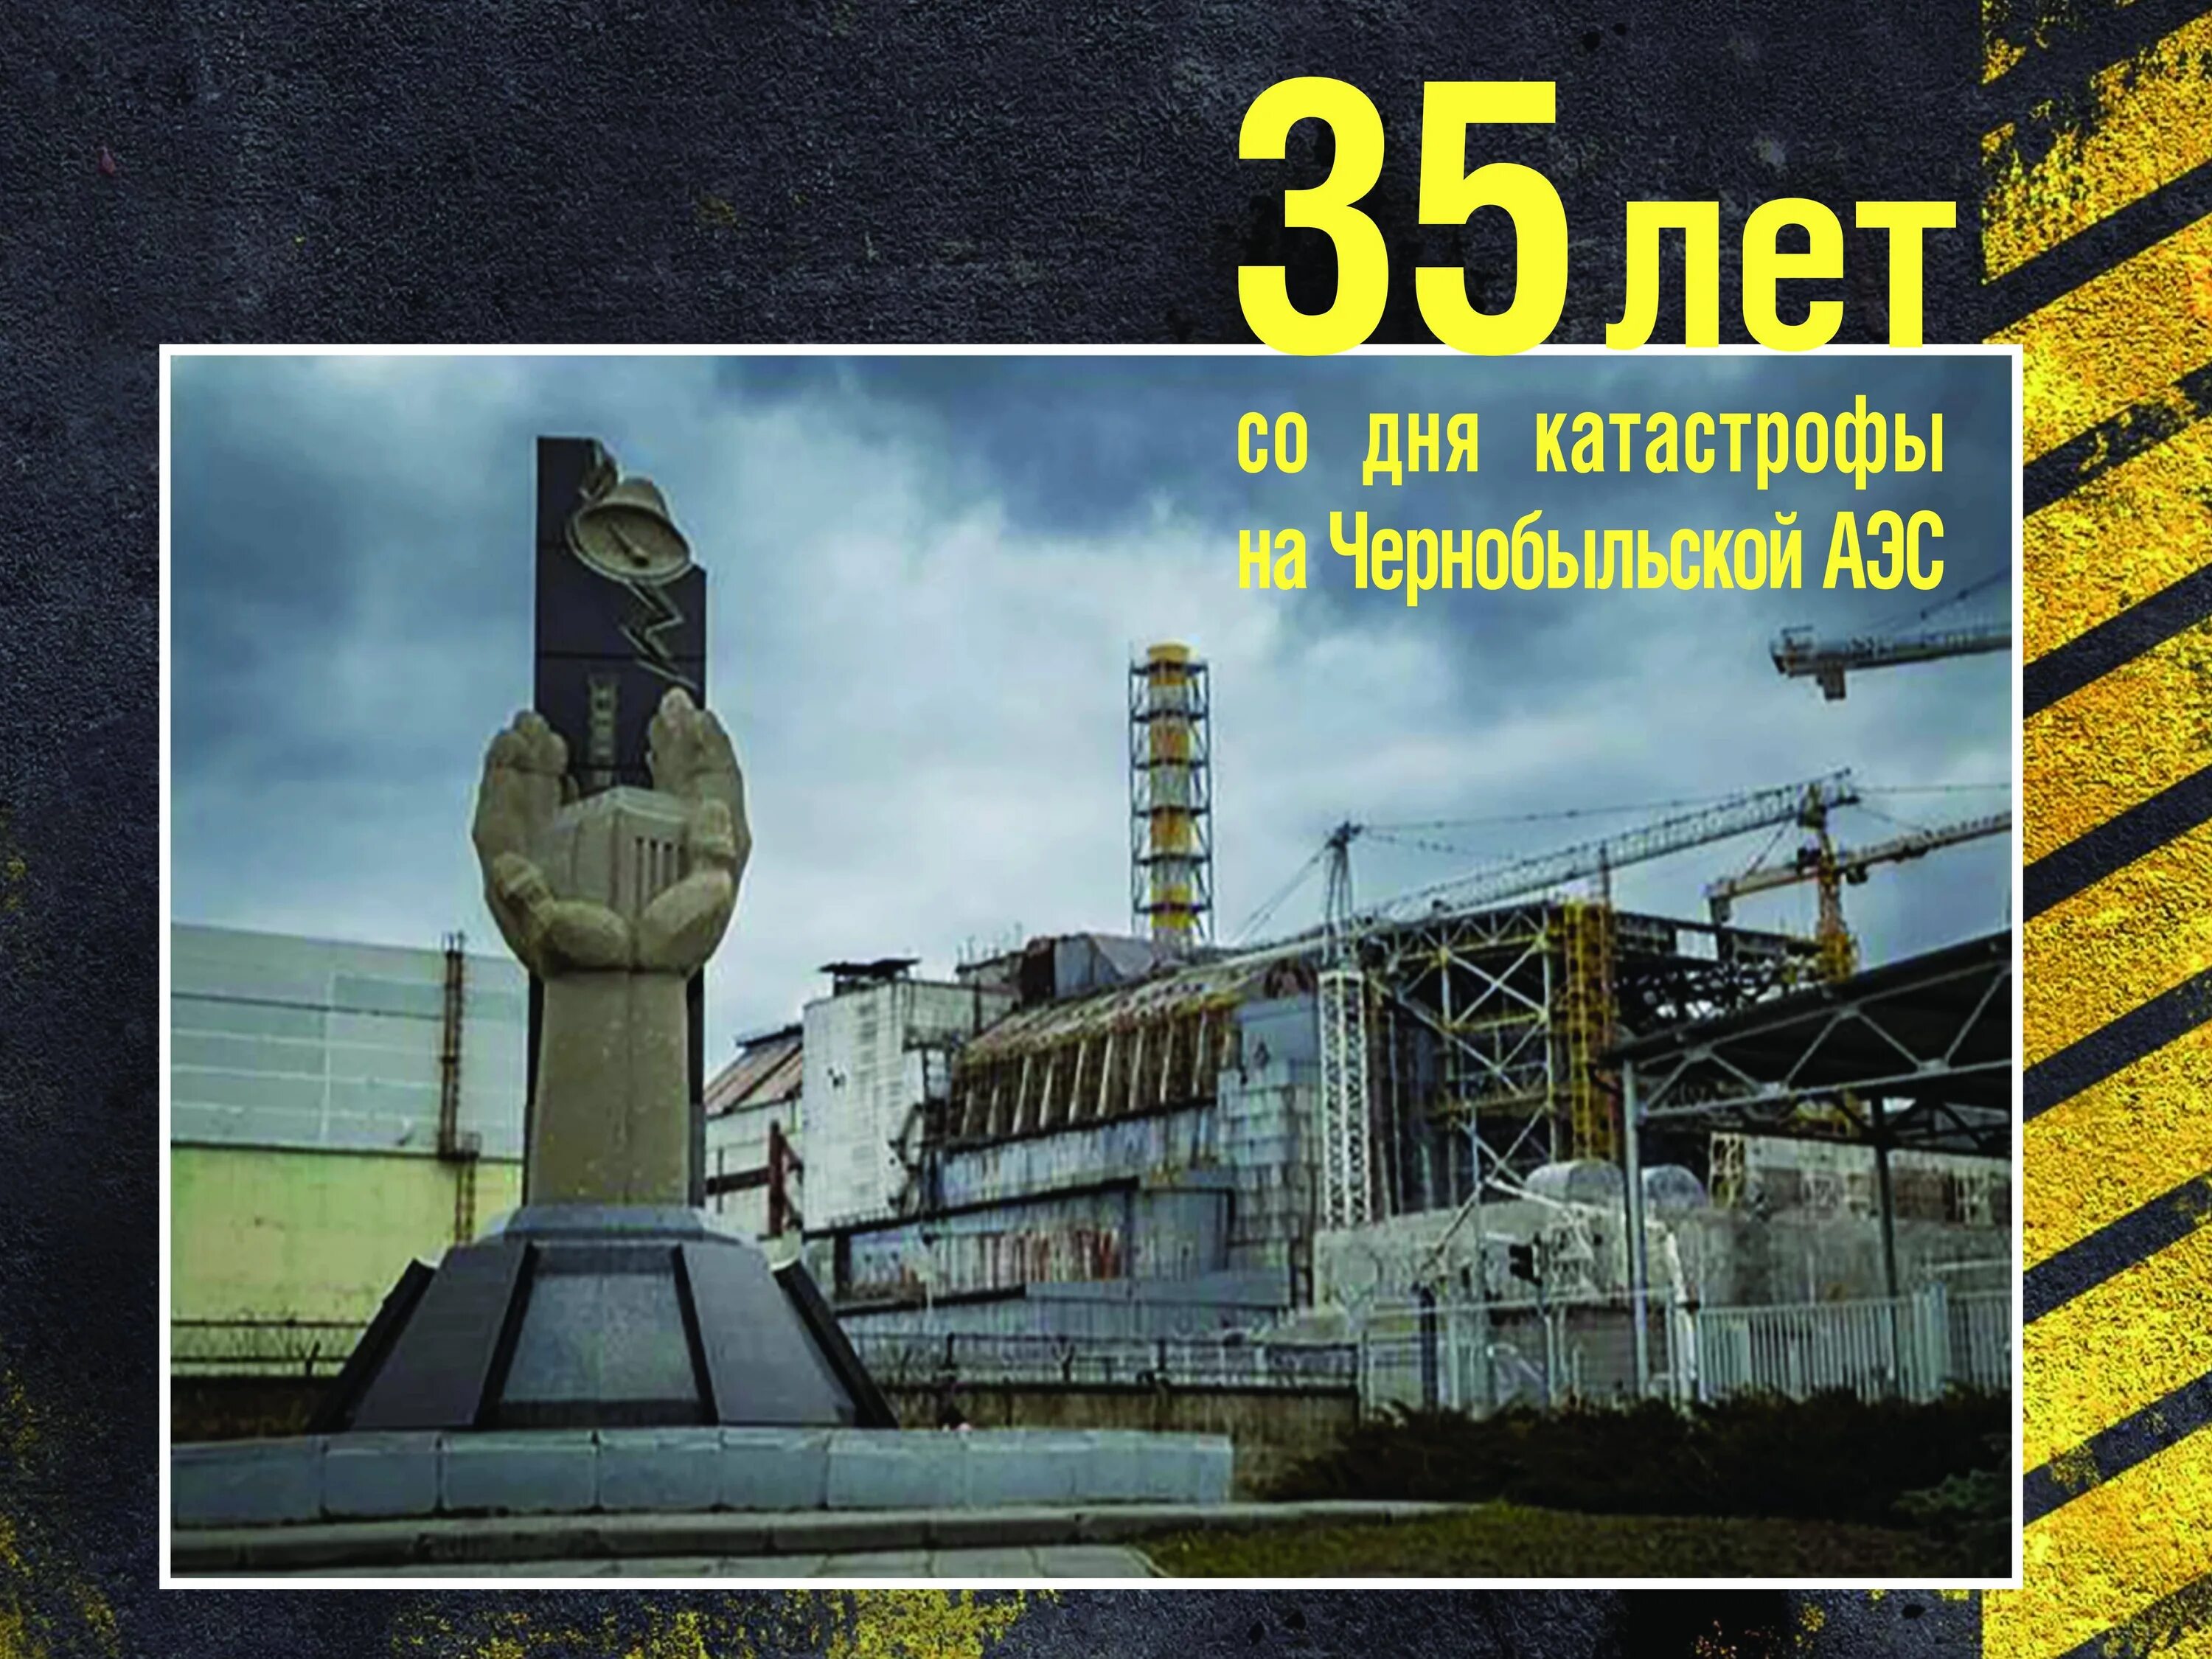 В каком году случилась чернобыльская аэс. 26 Апреля 1986 день памяти Чернобыльской АЭС. Чернобыль взрыв атомной станции 1986. ЧАЭС 26.04.1986. 35 Лет со дня аварии на Чернобыльской АЭС.